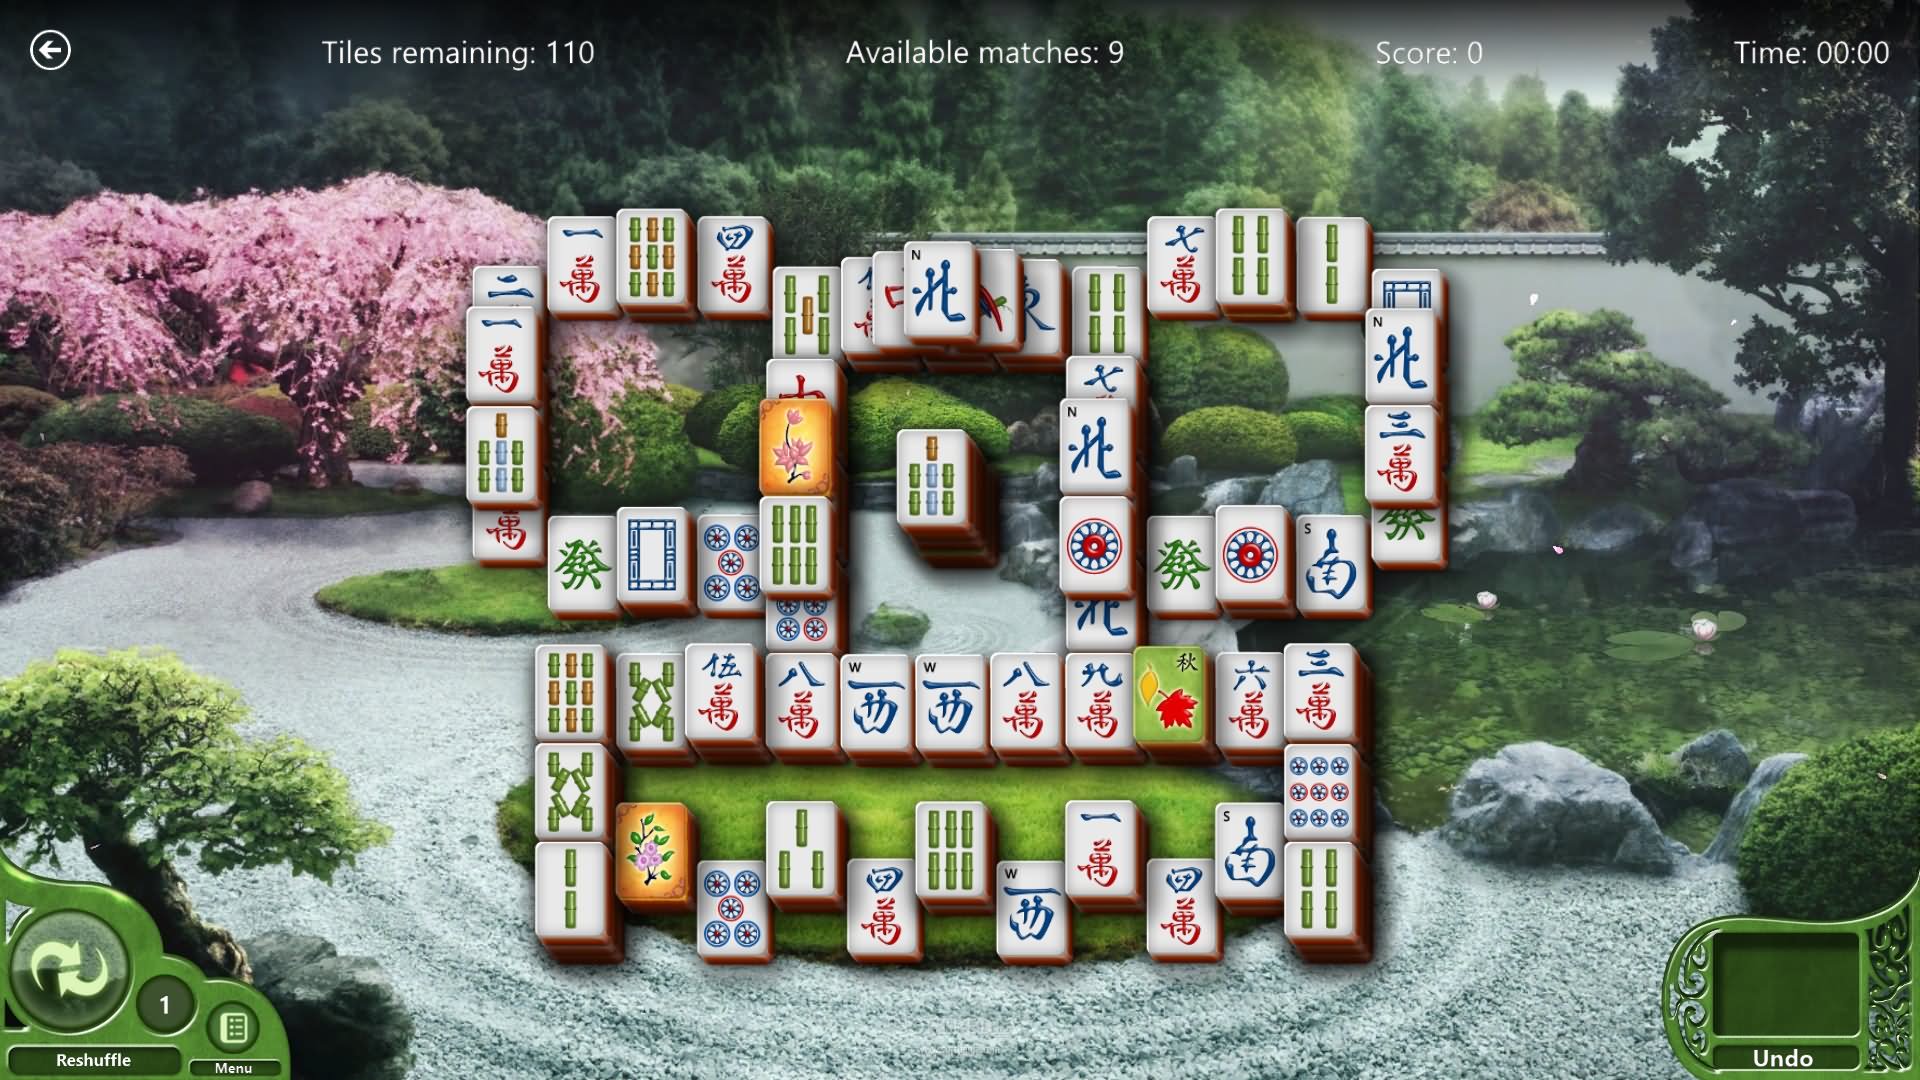 microsoft game mahjong